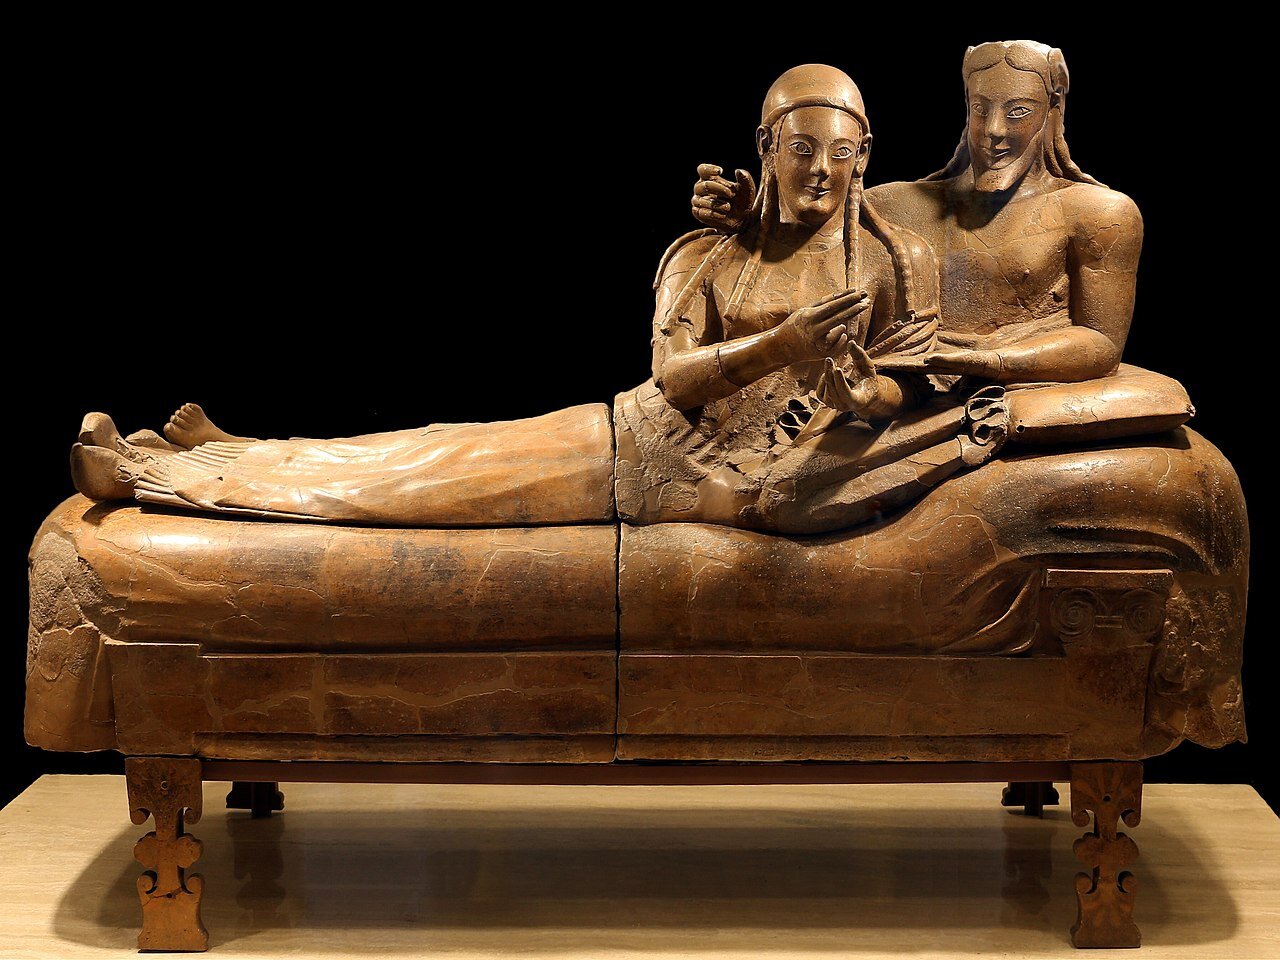 Ilustracja przedstawia sarkofag z rzeźbami kobiety i mężczyzny w pozycji półsiedzącej. Mężczyzna ma nagi tors, długie włosy z przedziałkiem na środku i brodę, opiera się na łokciu. Przed nim leży kobieta, ubrana w długą szatę, włosy zaplecione z kilka, małych warkoczyków.